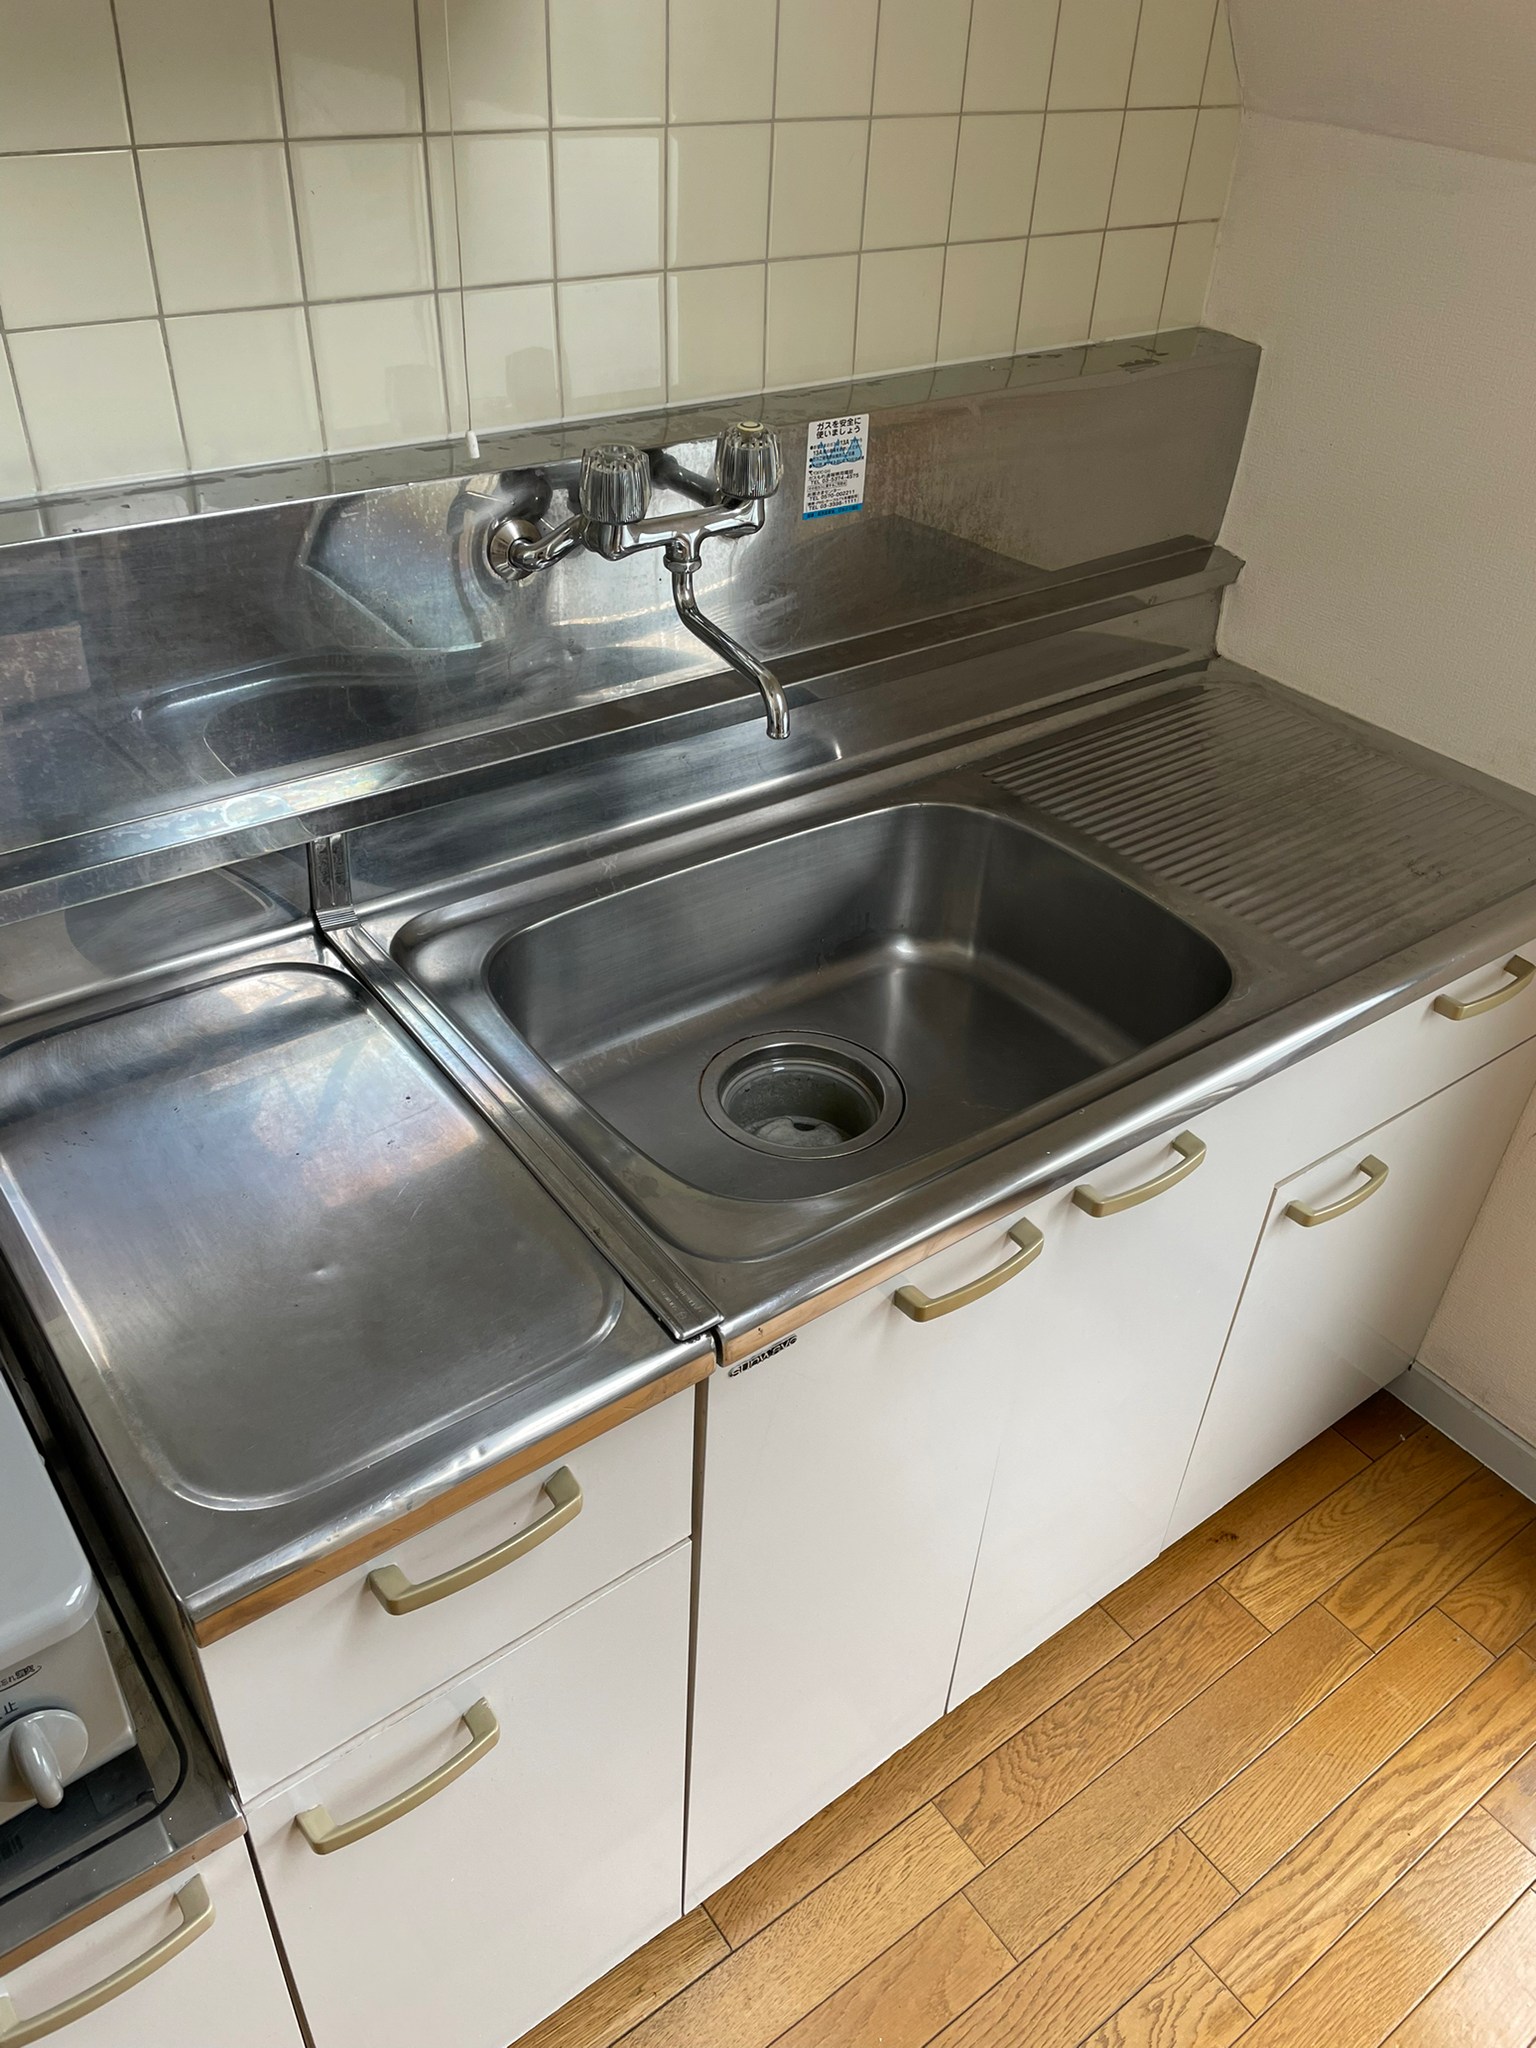 キッチン用品全般、生活ゴミ、炊飯器、ポットの回収後の状態